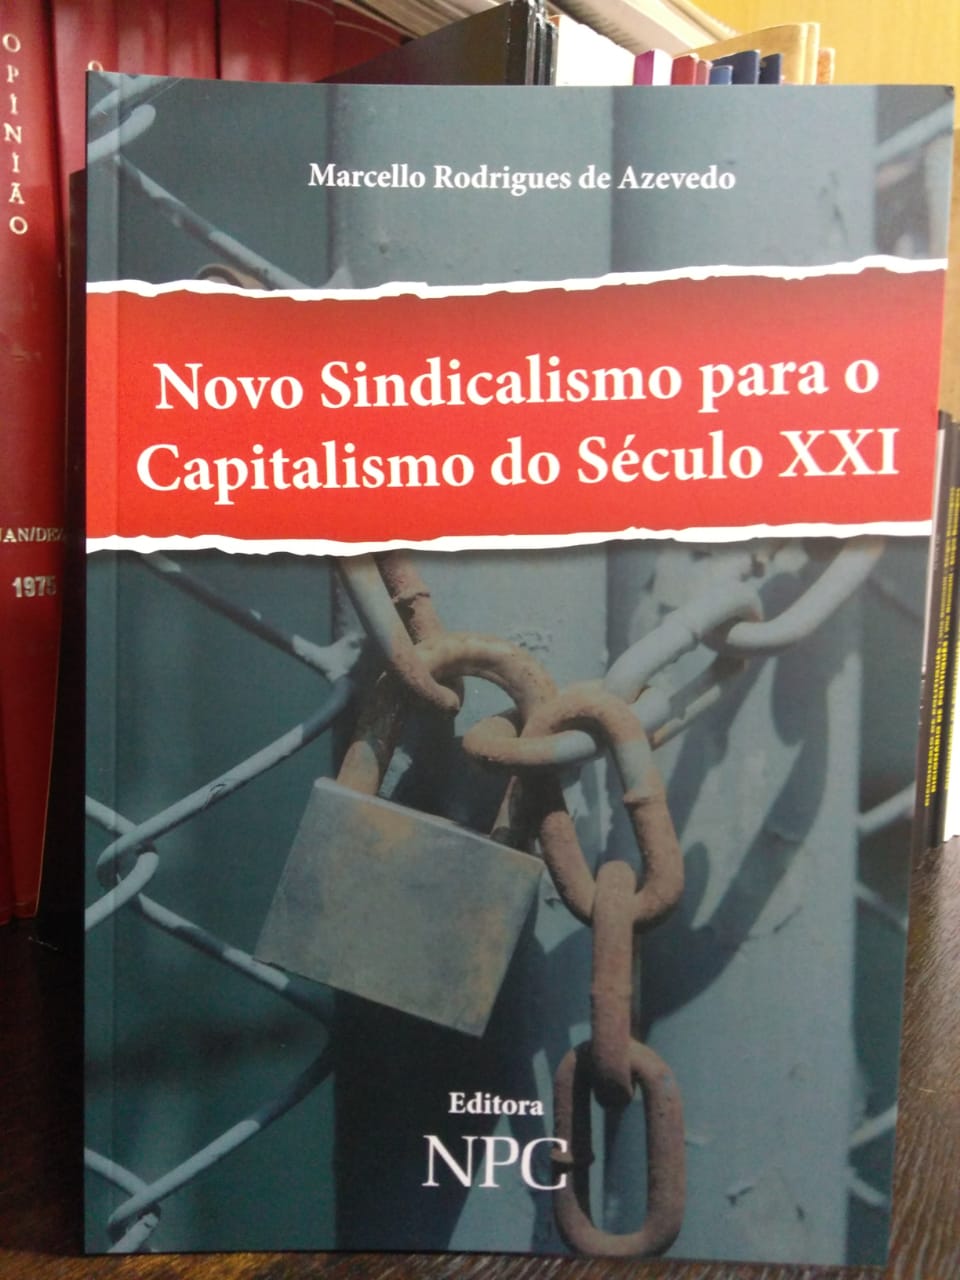 Novo Sindicalismo para o Capitalismo do Século XXI – Marcello Rodrigues de Azevedo